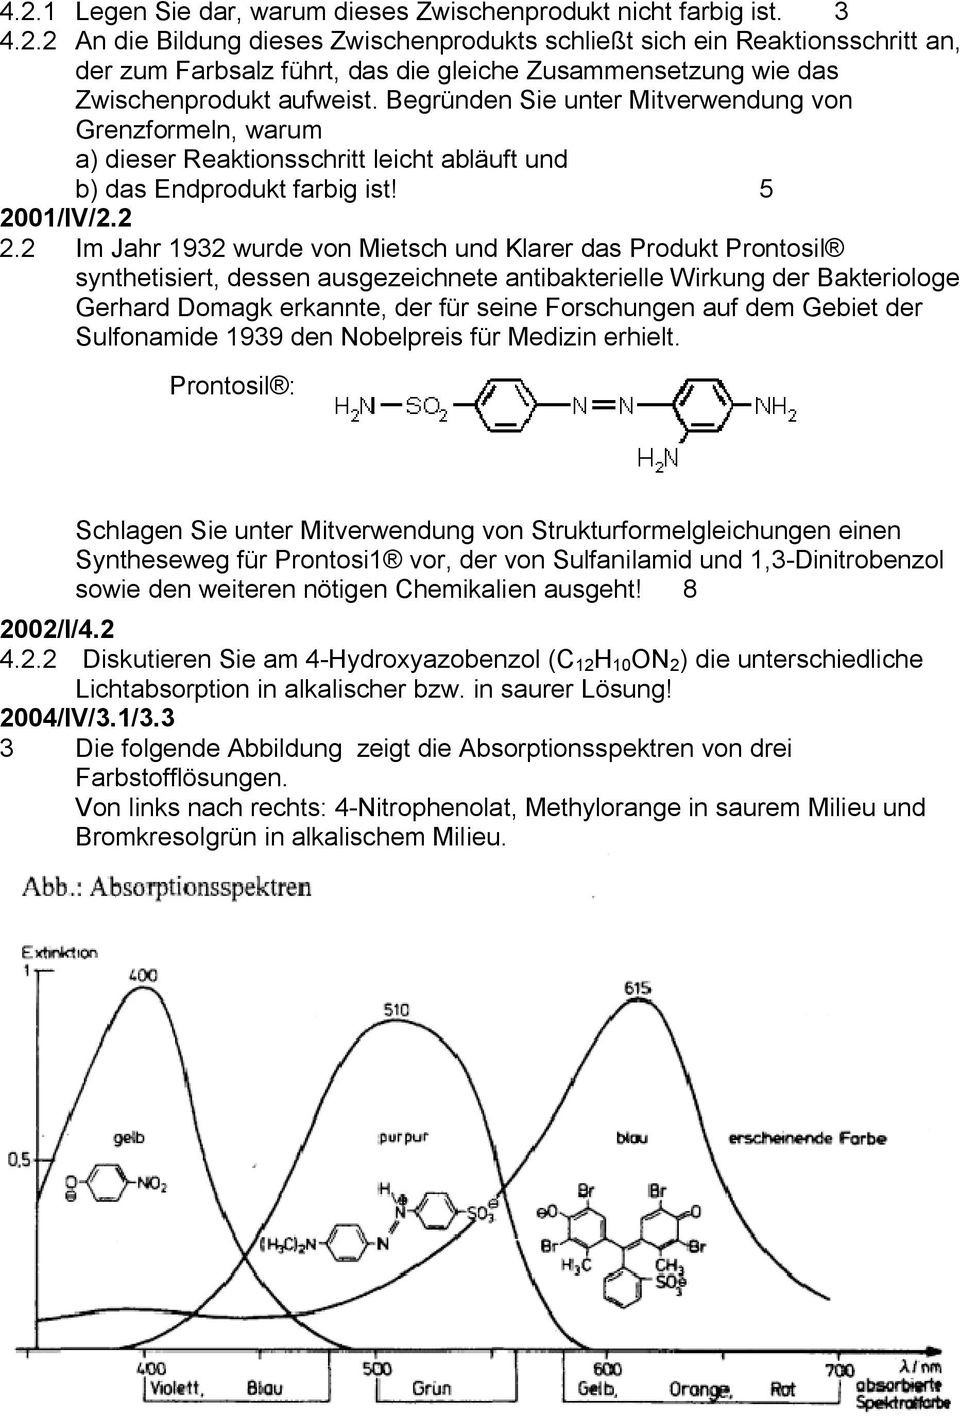 2 Im Jahr 1932 wurde von Mietsch und Klarer das Produkt Prontosil synthetisiert, dessen ausgezeichnete antibakterielle Wirkung der Bakteriologe Gerhard Domagk erkannte, der für seine Forschungen auf